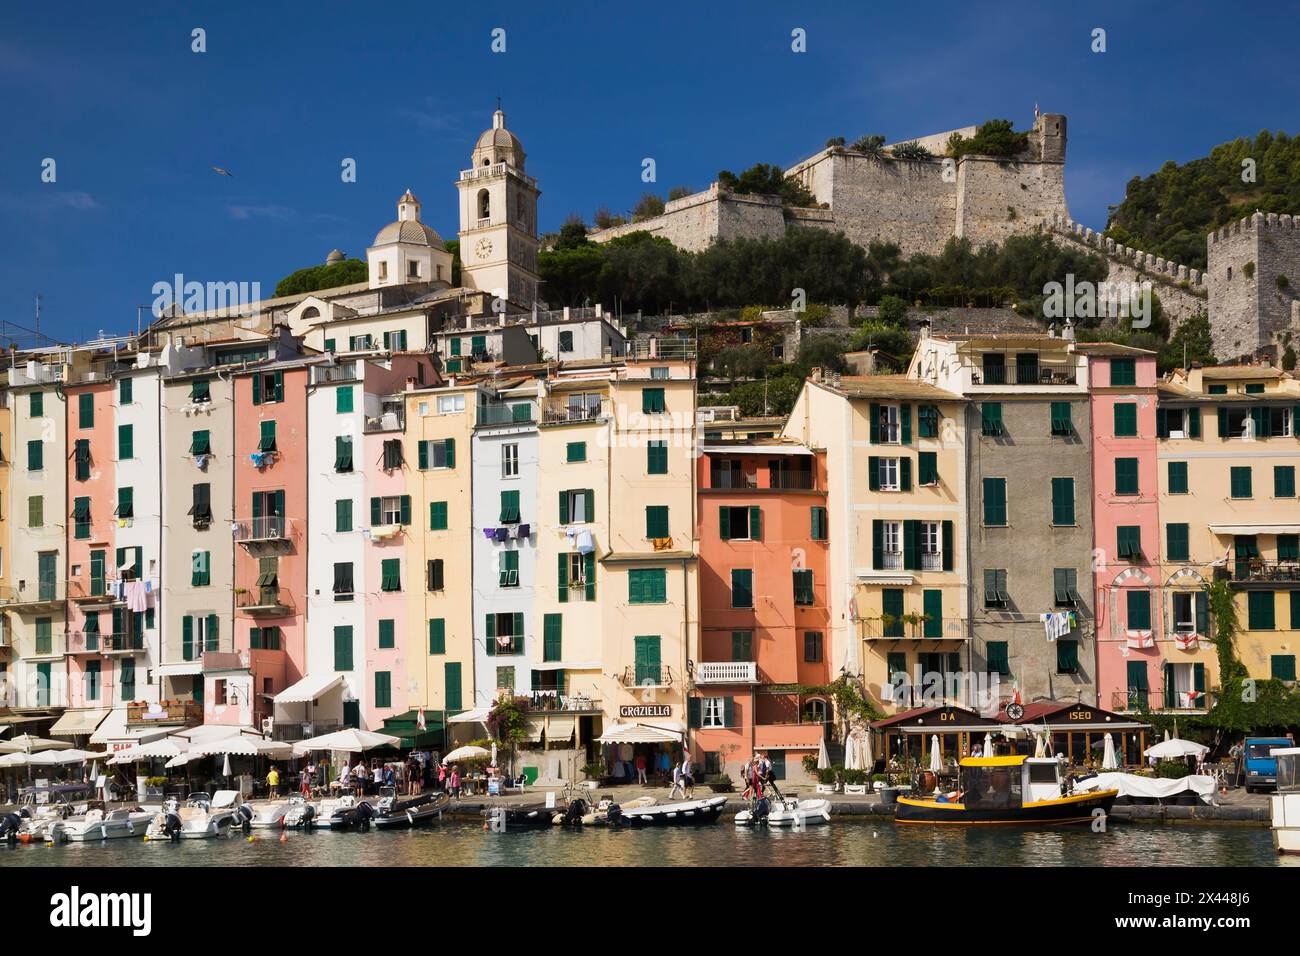 Port avec bateaux de pêche et façades colorées d'immeubles d'appartements à Portovenere, province de la Spezia, Italie Banque D'Images